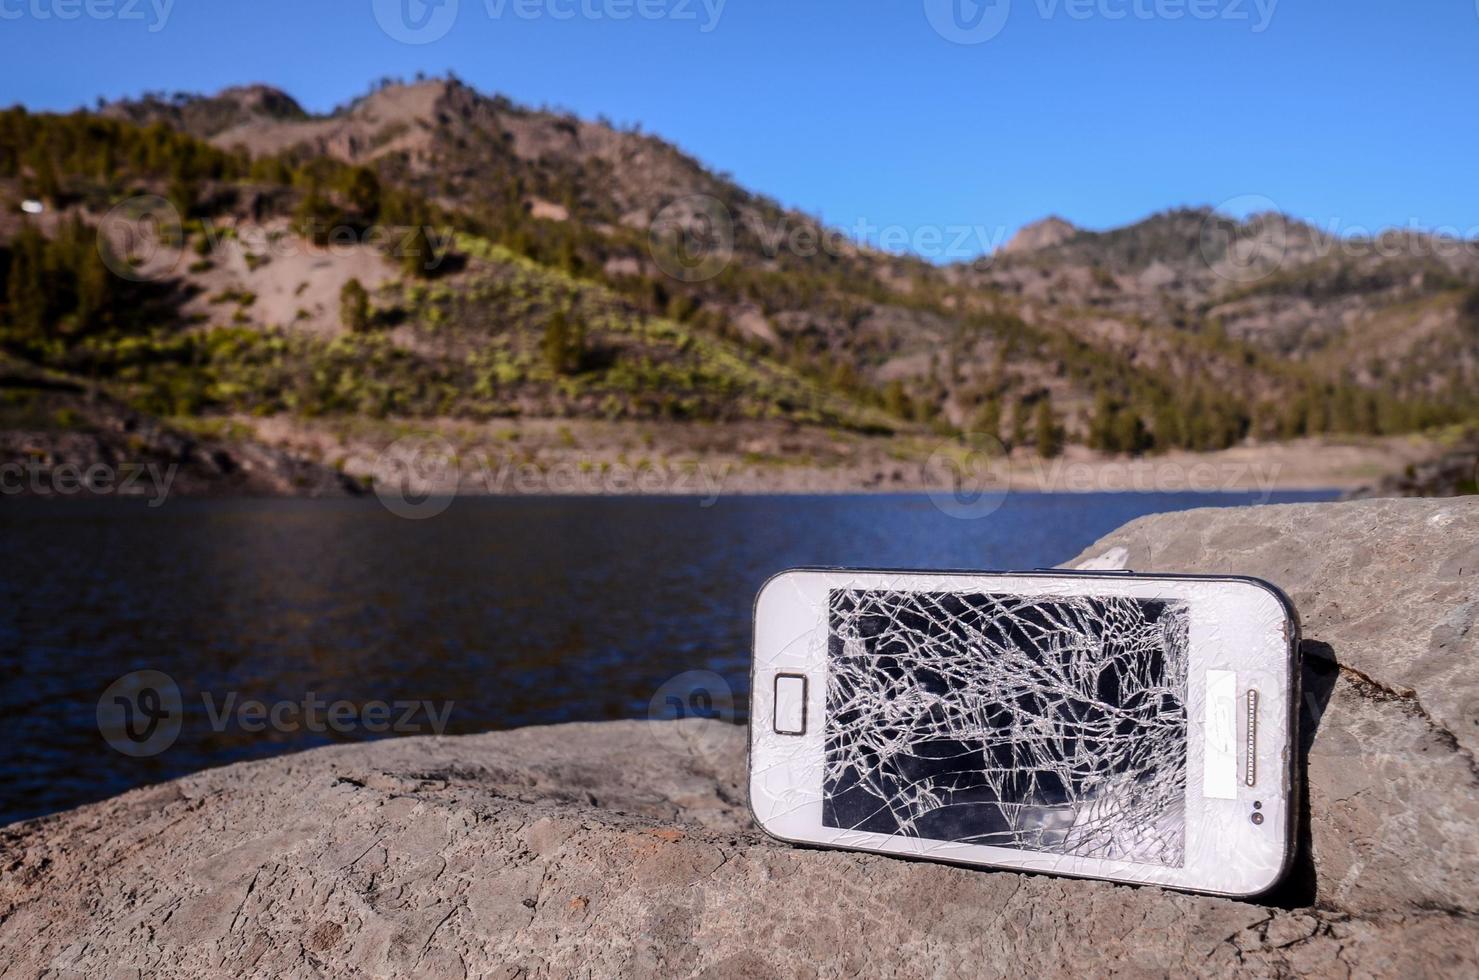 téléphone cassé sur les rochers photo